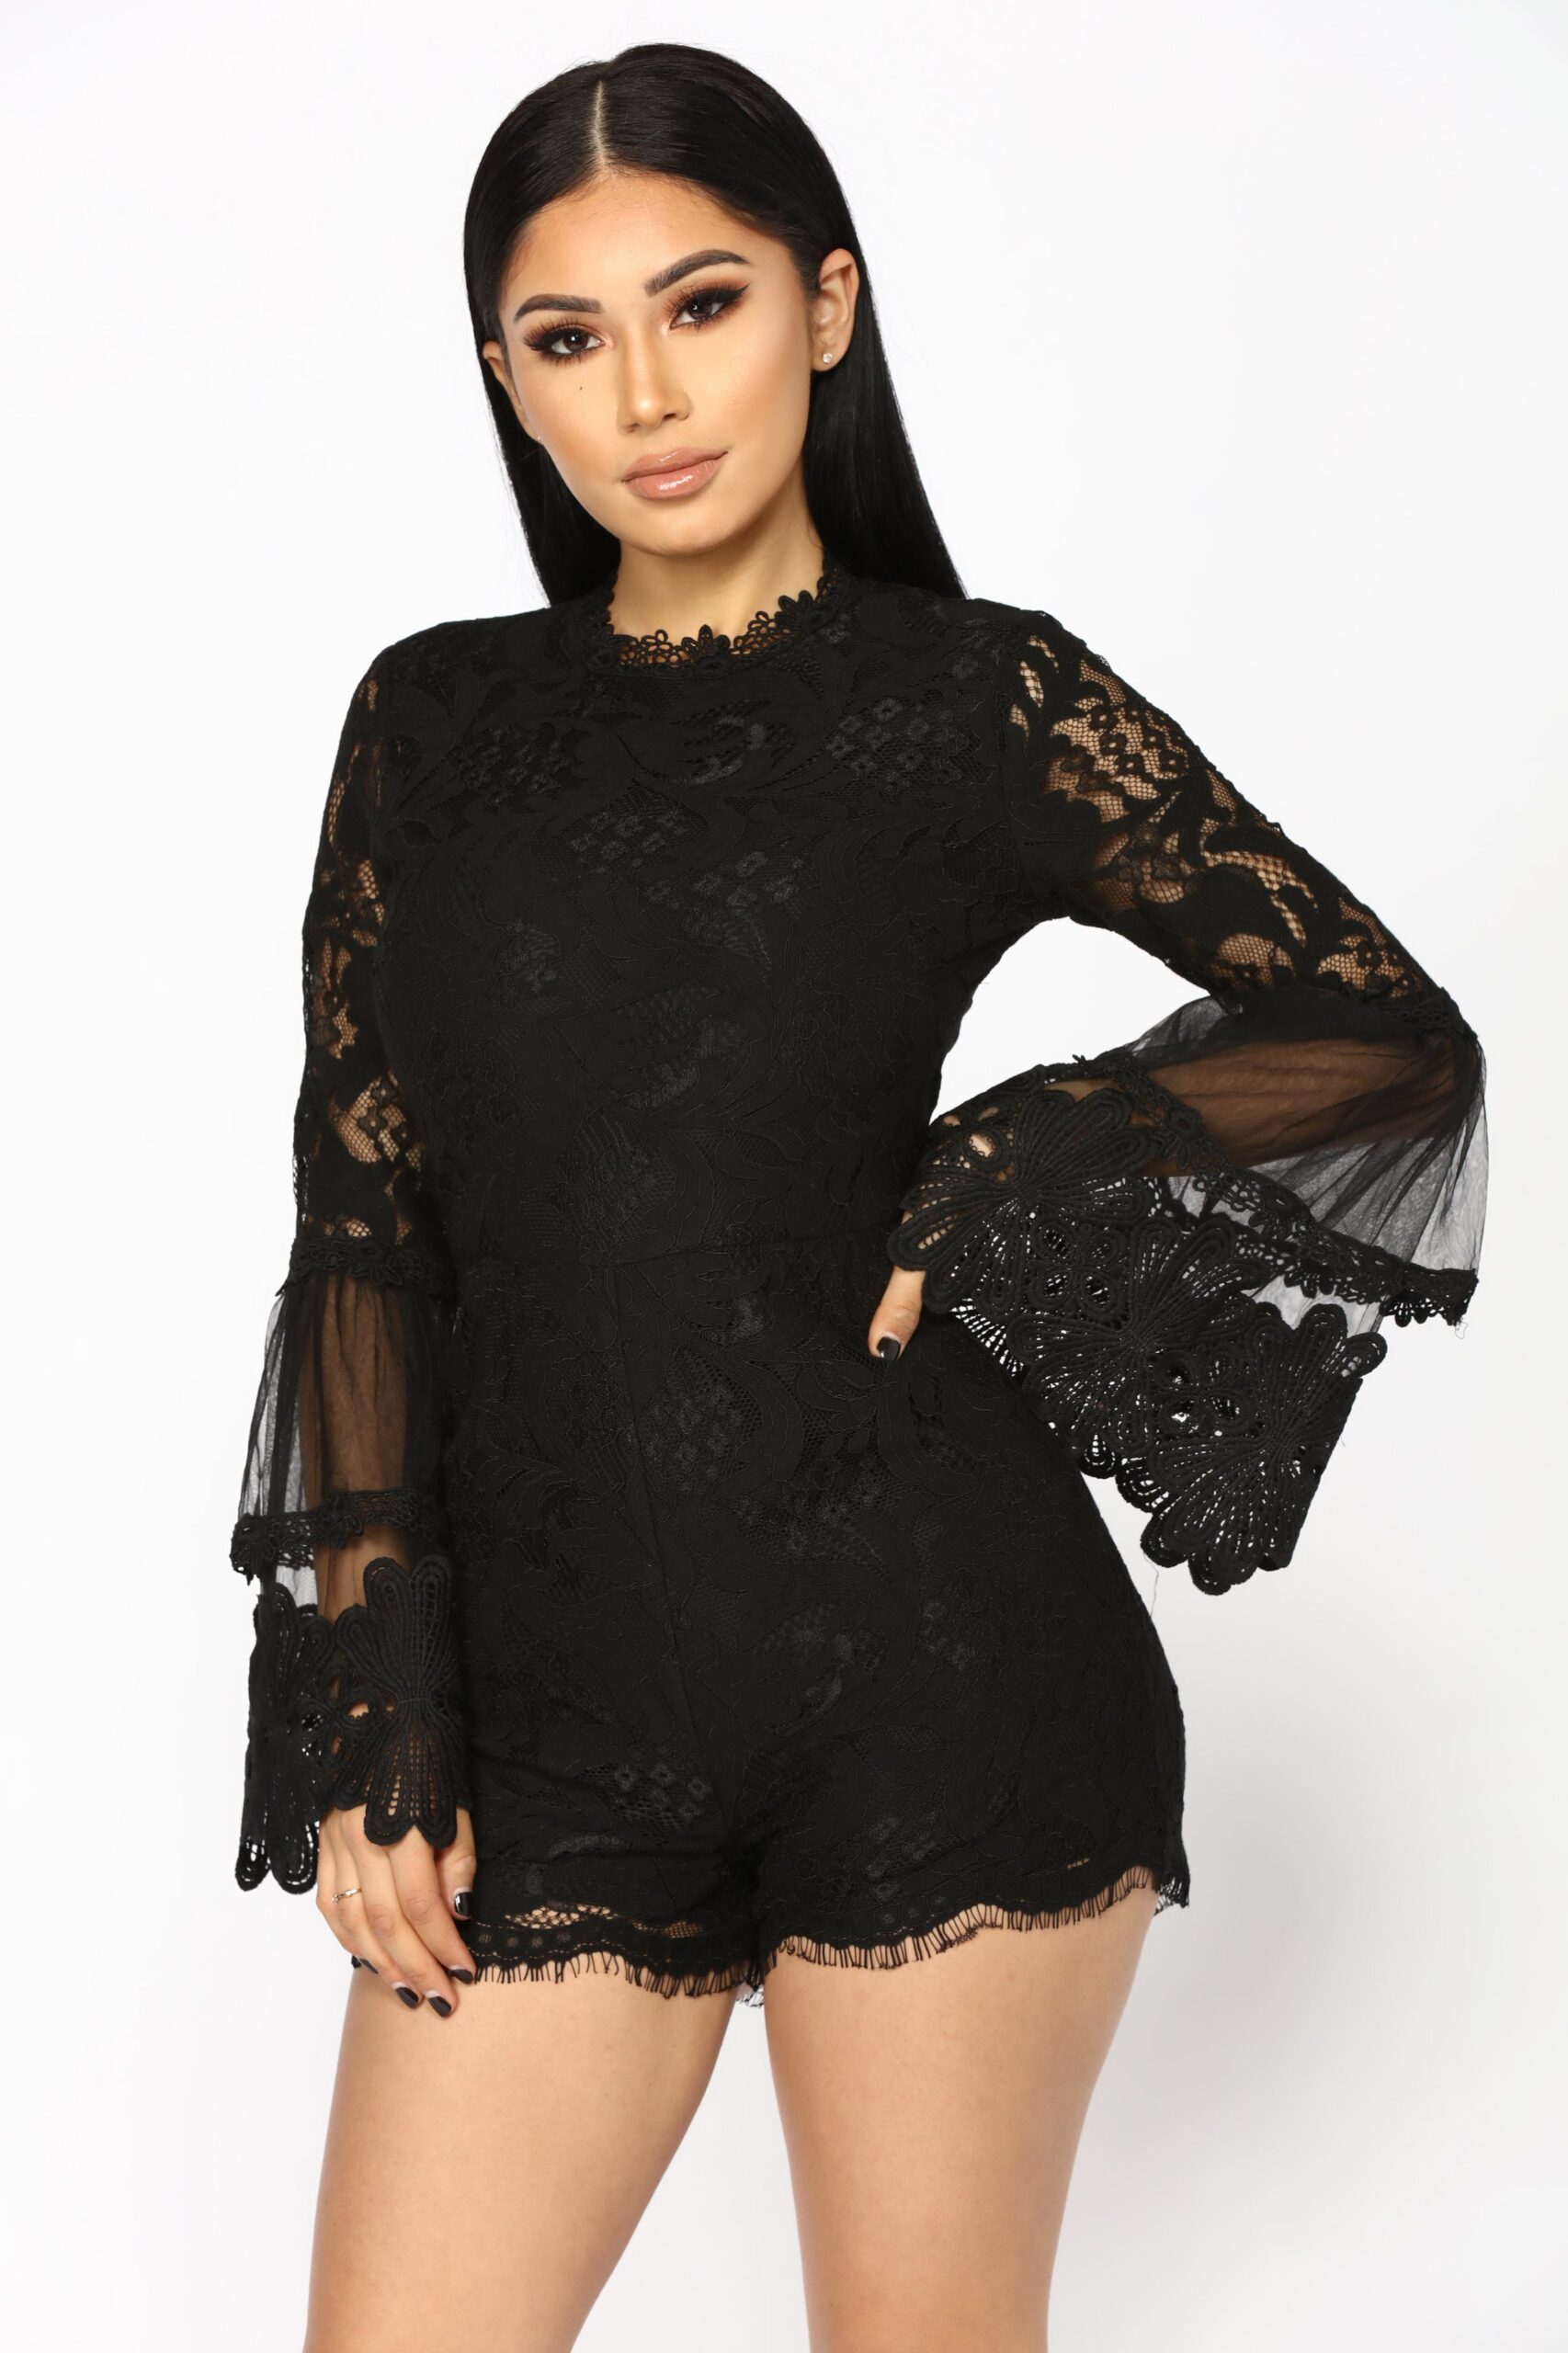 Black Romper Dress Short 2021